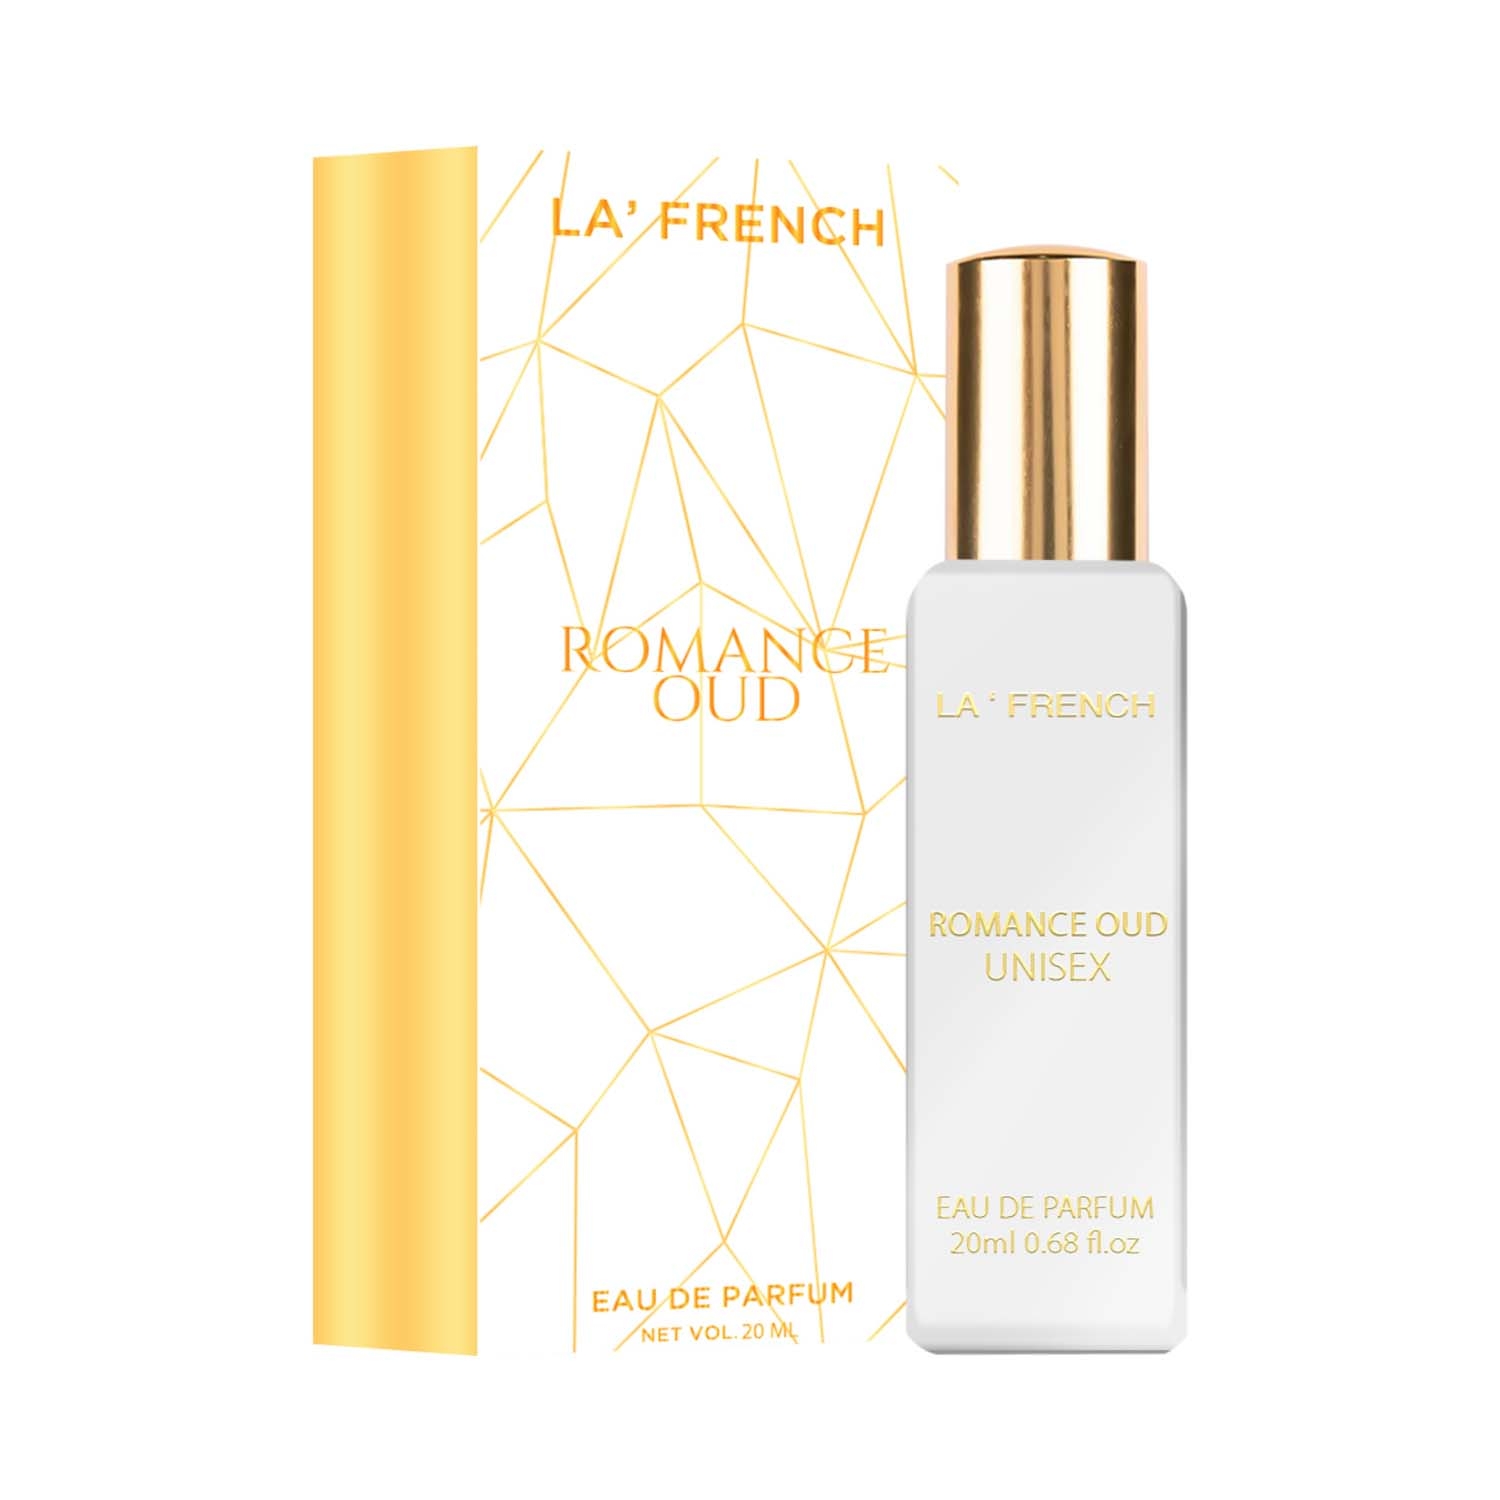 LA' French | LA' French Romance Oud Eau De Parfum (20ml)